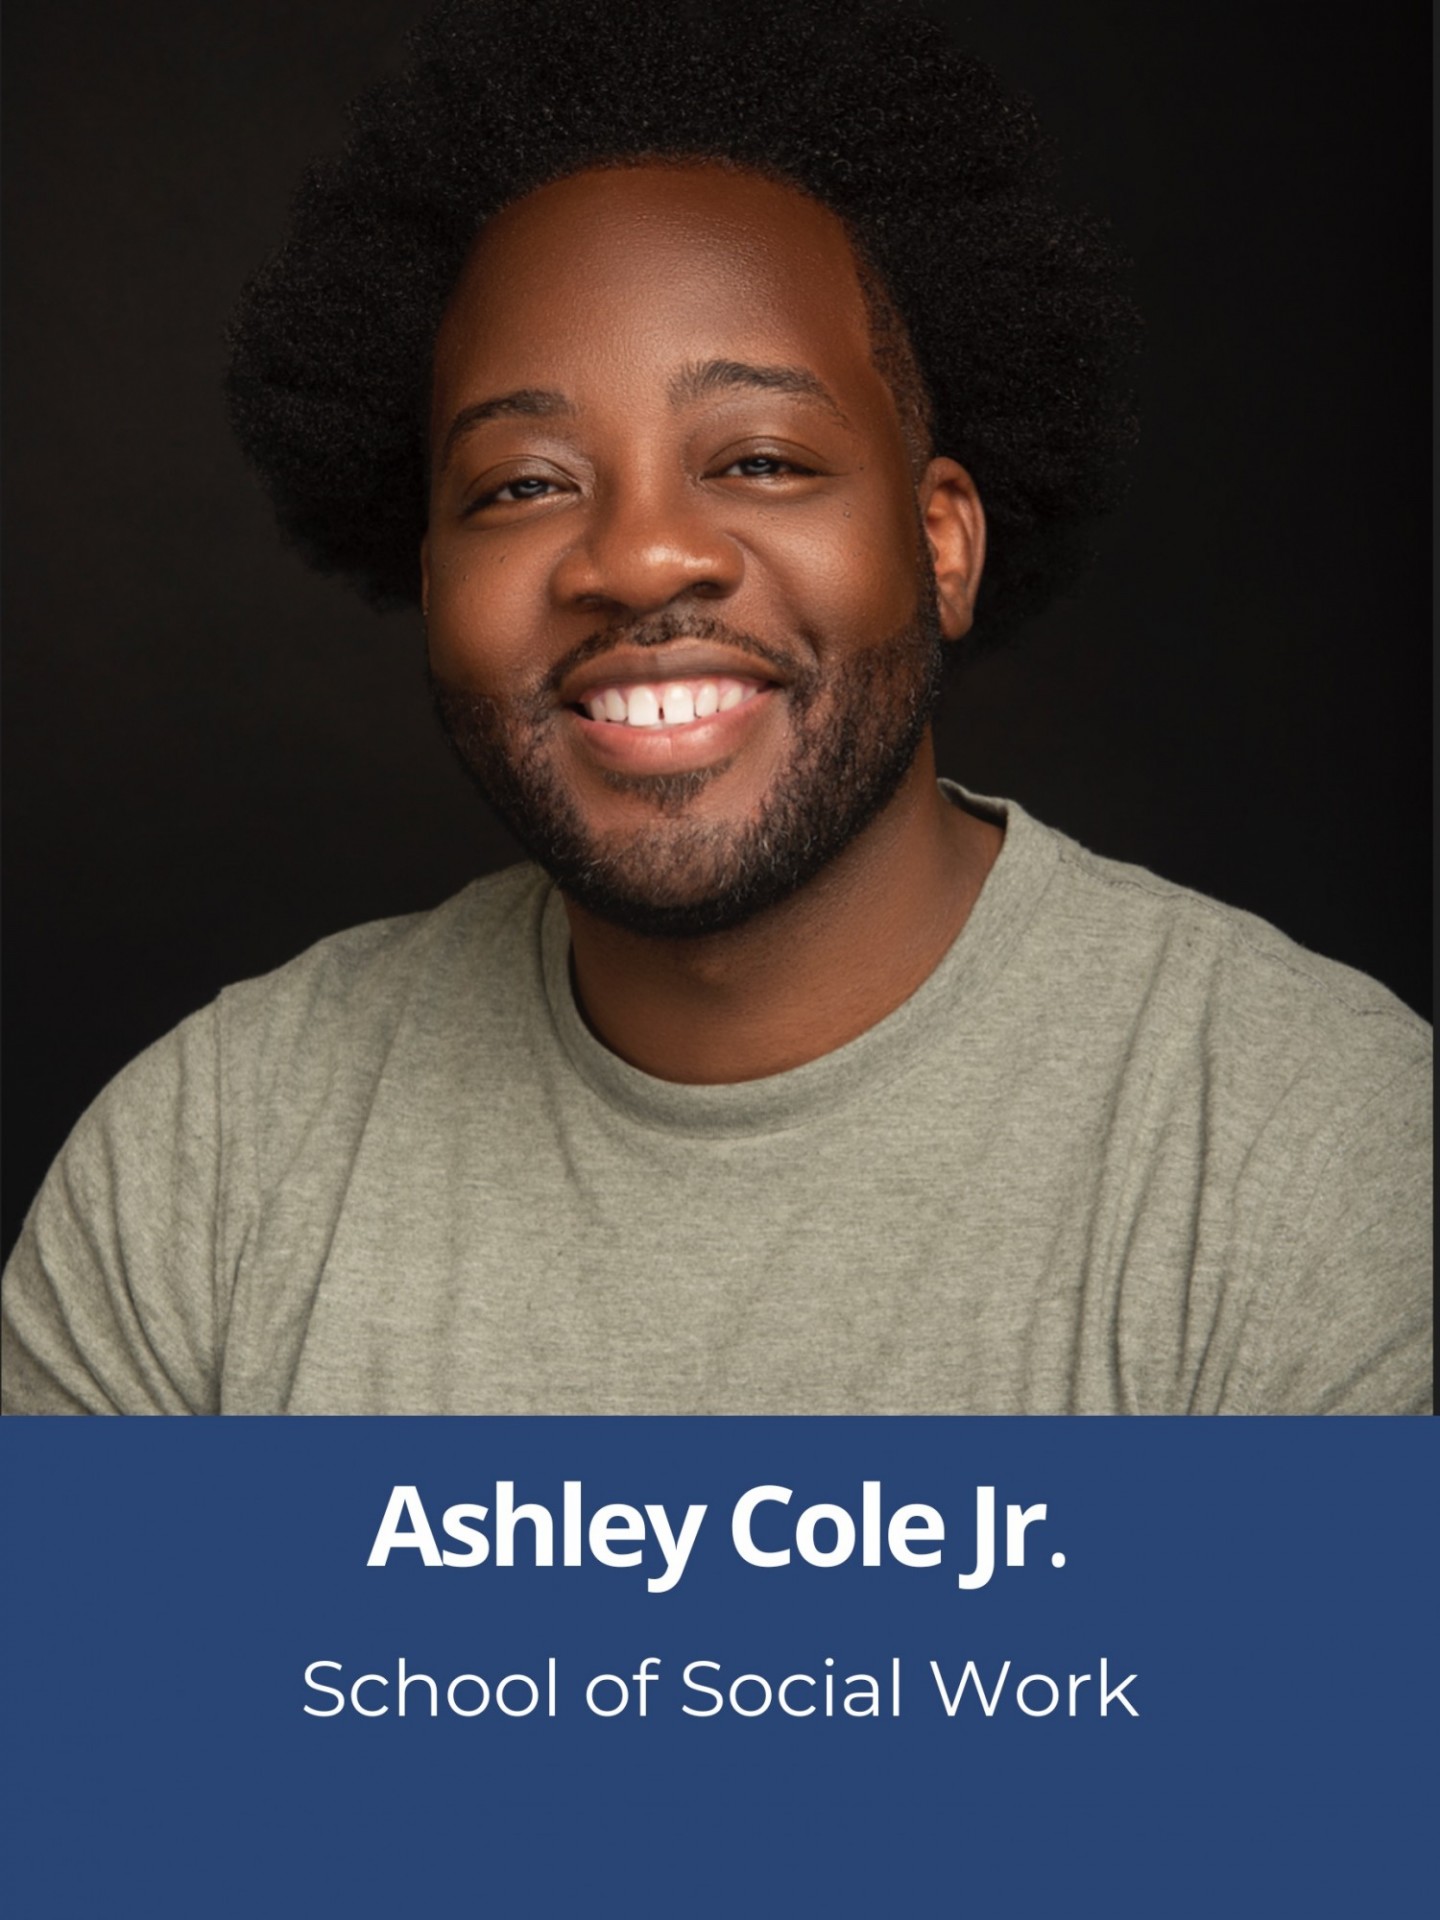 Ashley Cole, Jr., School of Social Work